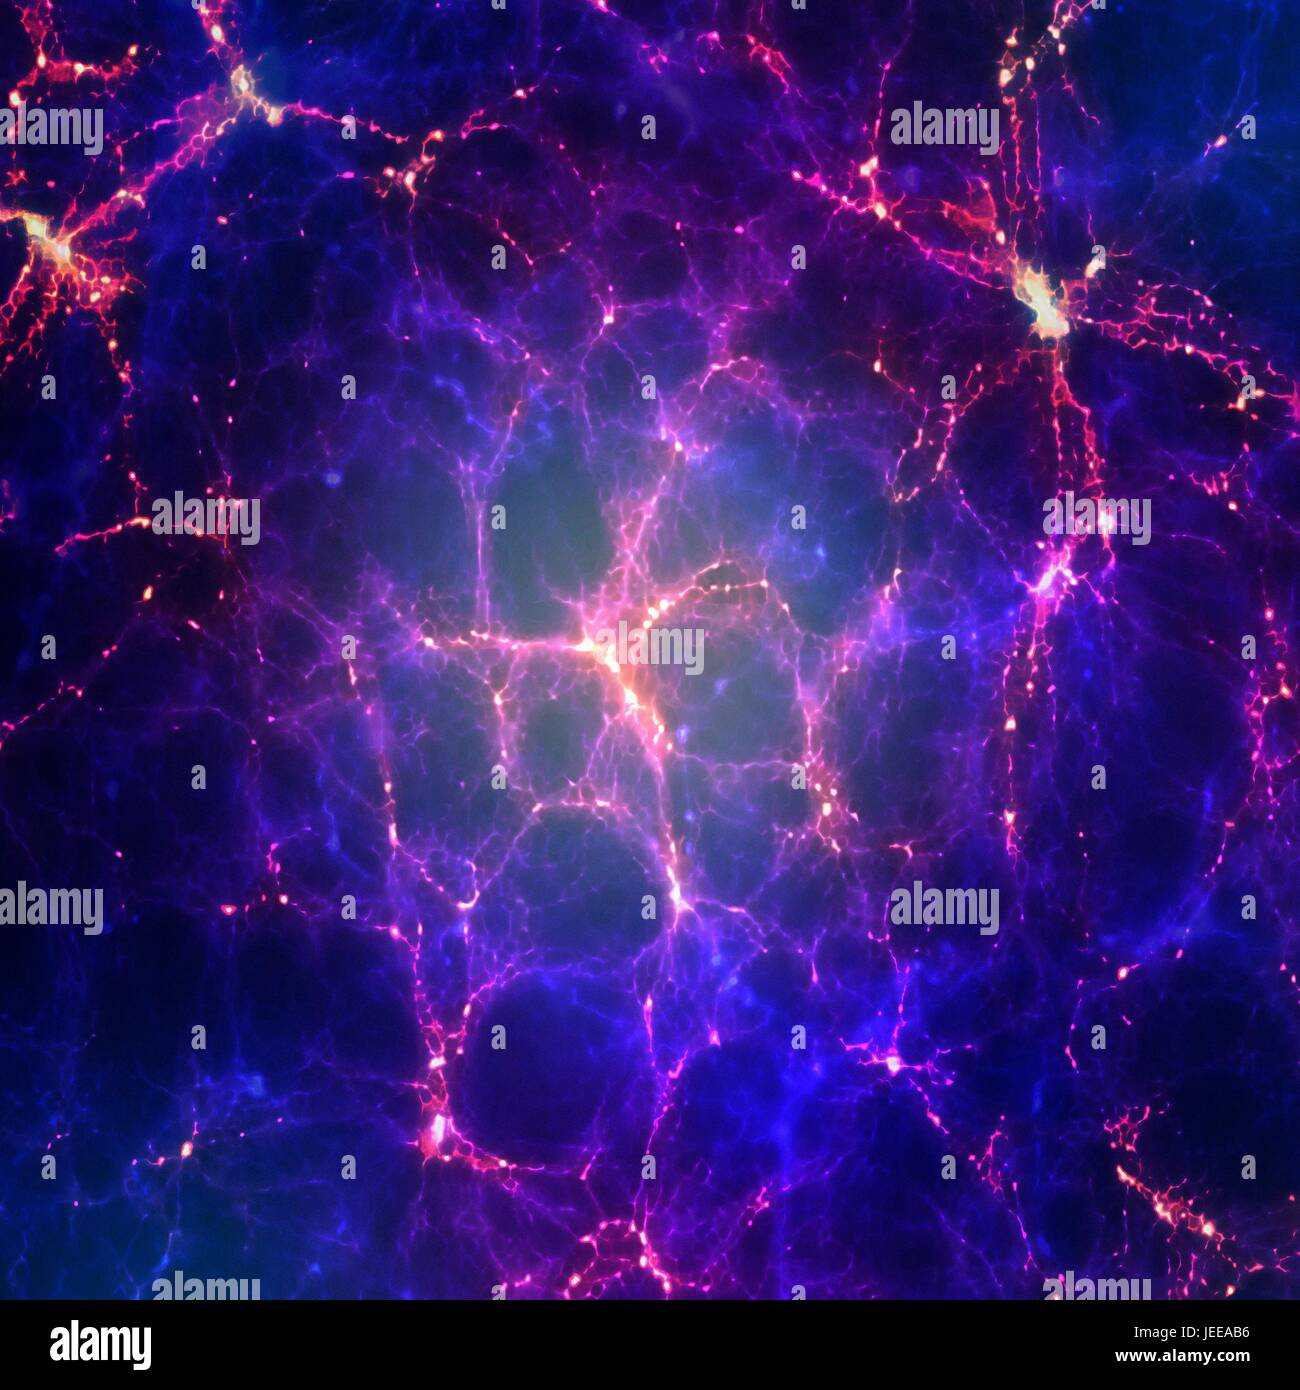 Une impression de la structure à grande échelle de l'univers, montrant les superamas de galaxies et clusterrs disposées en longs filaments et concentré aux nœuds. Banque D'Images